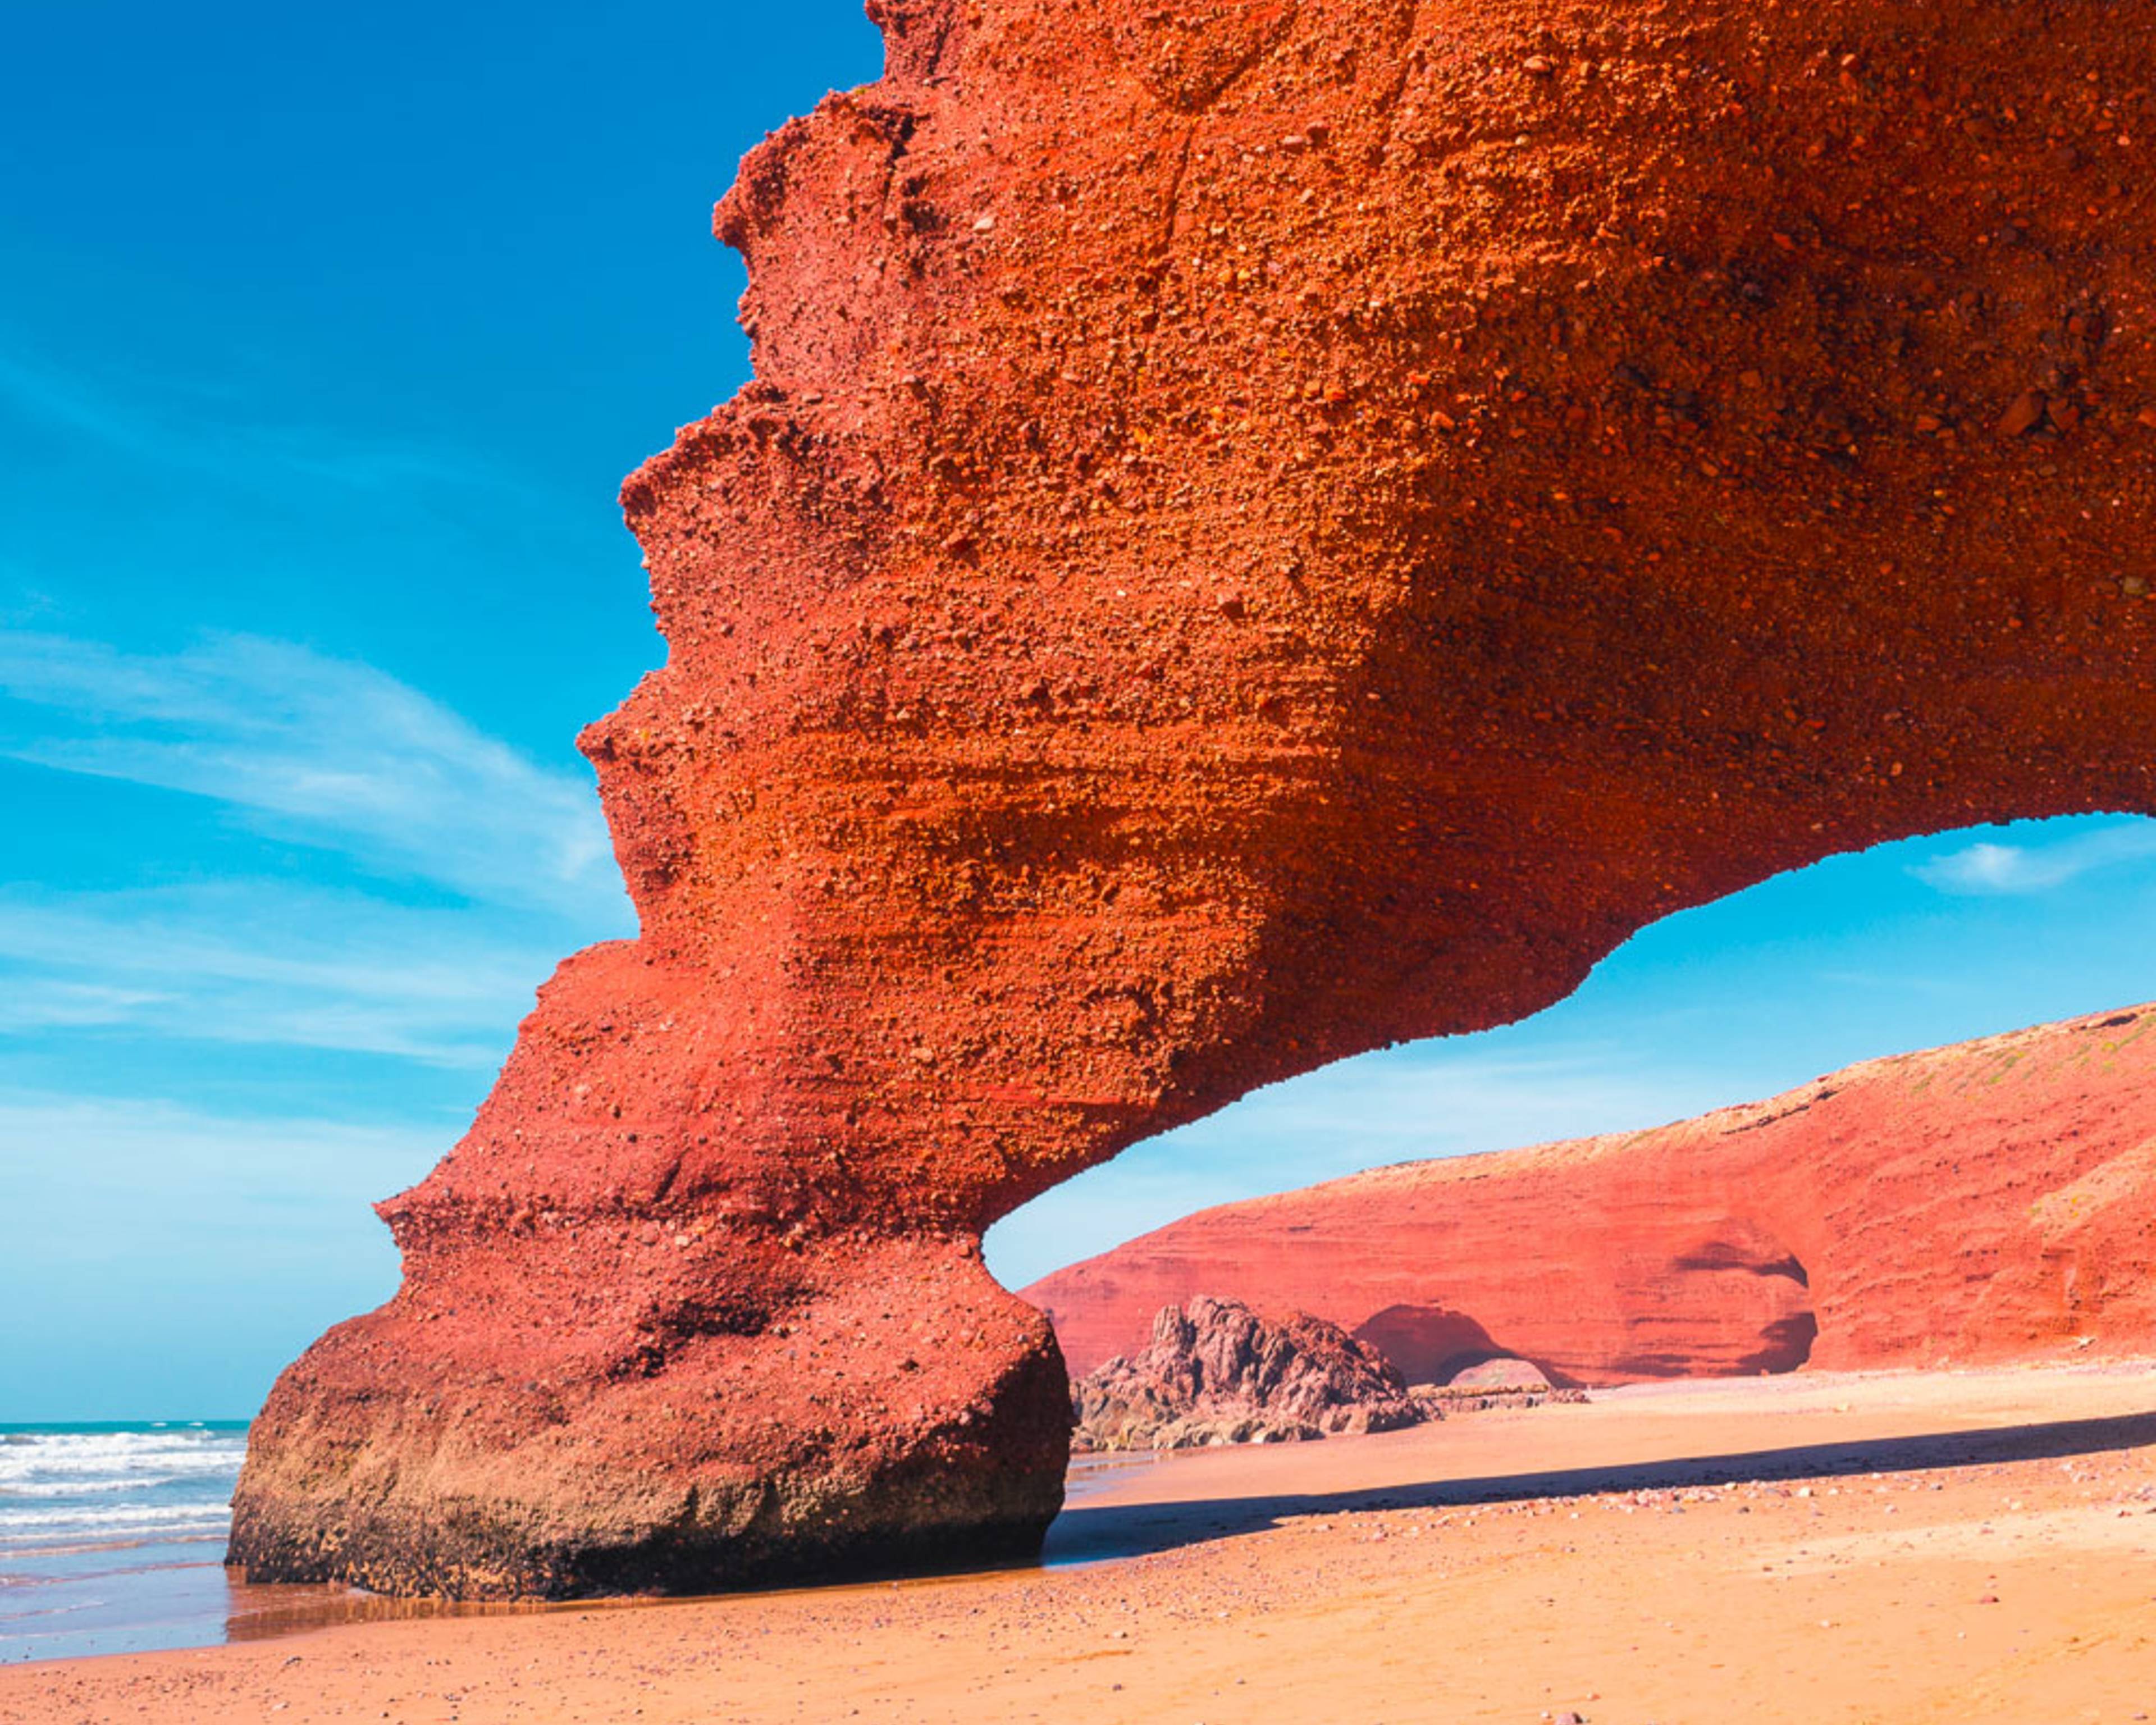 Découvrez les plus belles plages lors de votre voyage au Maroc 100% sur mesure